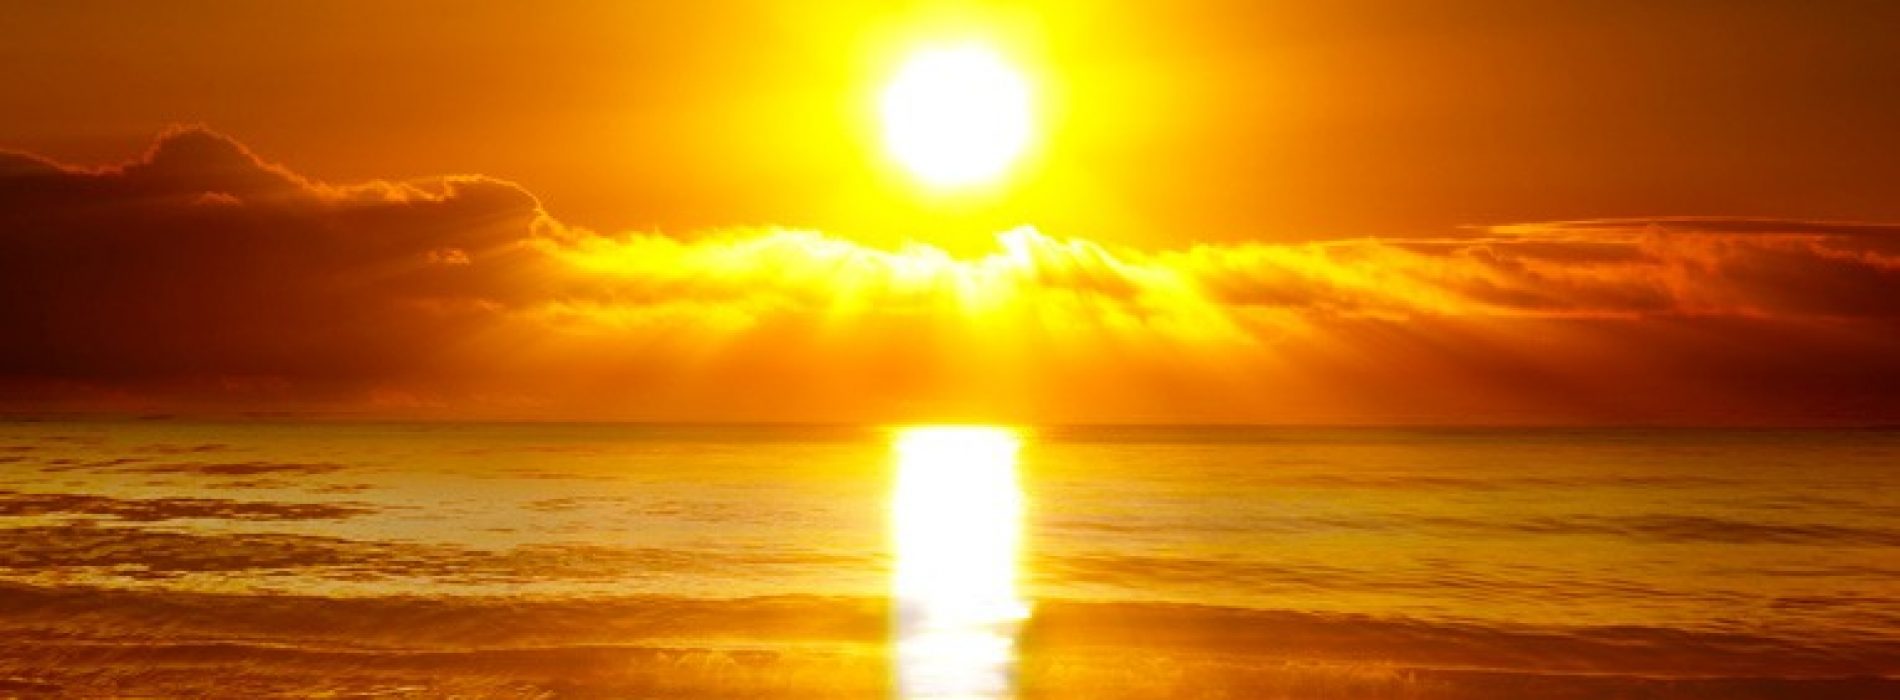 Zonnebrandcrème vermoord mensen; Wetenschappers zeggen nu dat zonlichtgebrek dodelijk is, waardoor tientallen jaren van propaganda  door de giftige zonnebrandindustrie van tafel wordt geveegd!